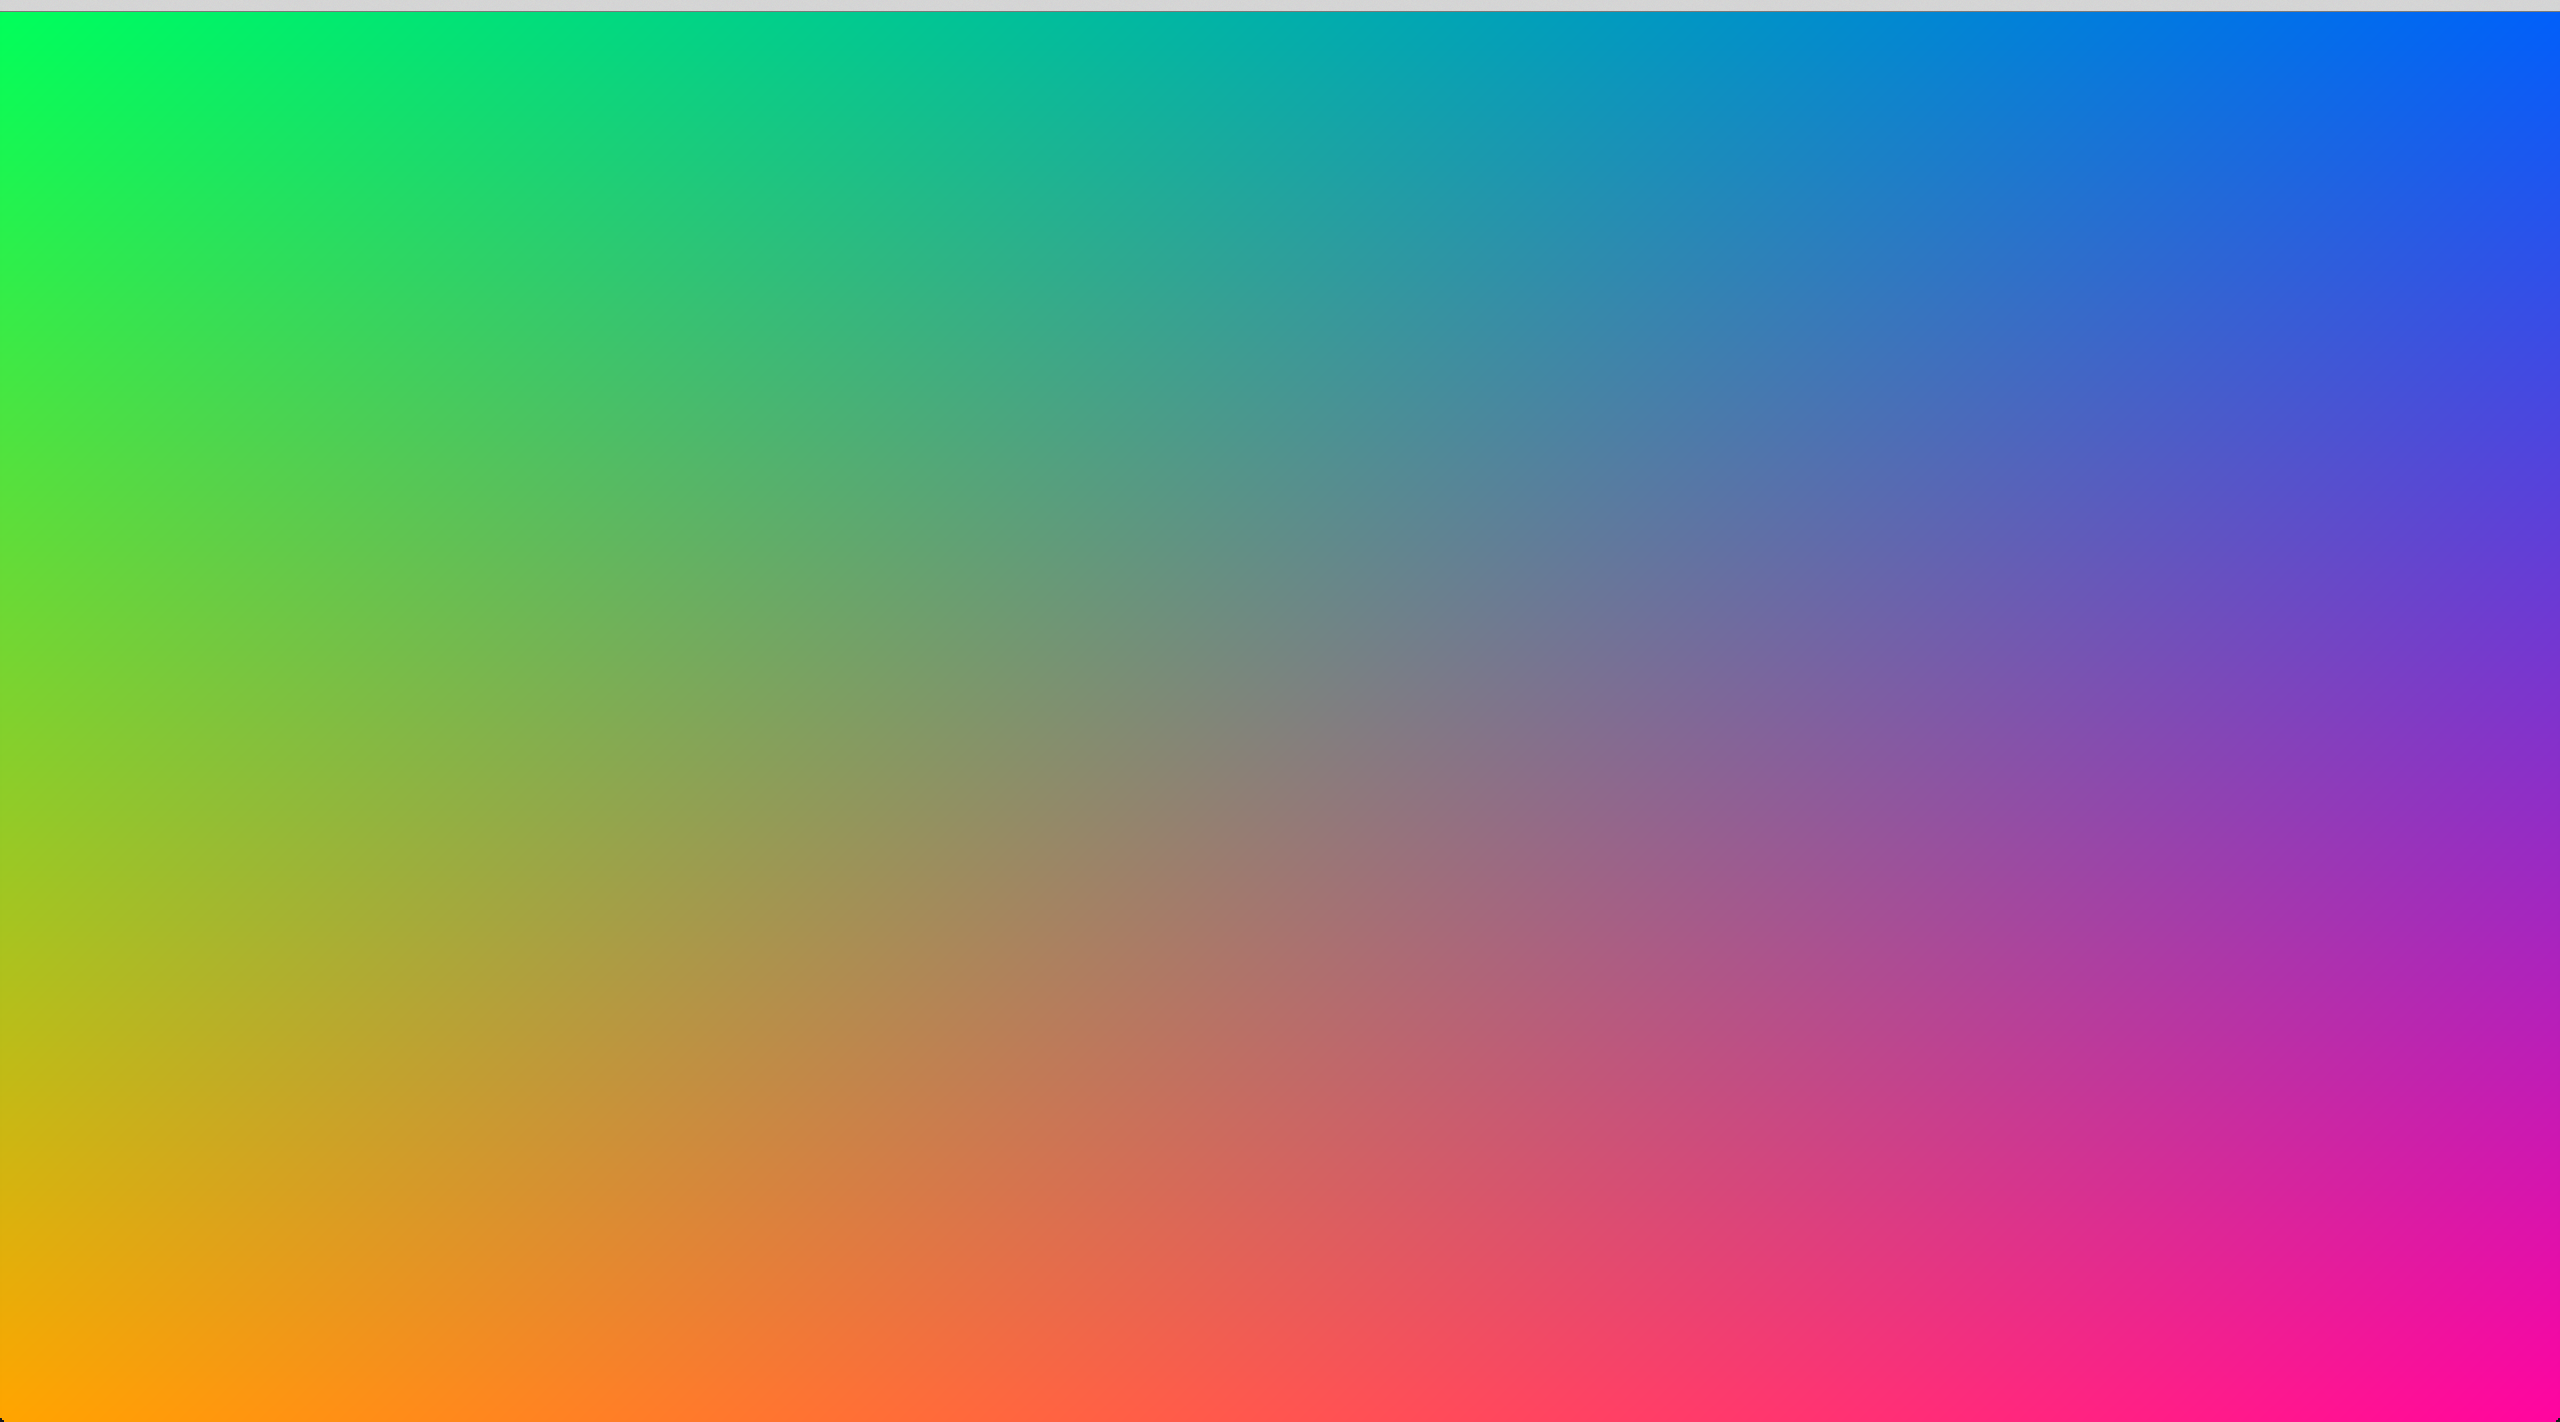 Nếu bạn muốn tạo ra những trang web độc đáo và đầy sáng tạo, thì CSS gradients and background blend mode là điều bạn cần. Với các ảnh liên quan đến từ khoá này, bạn có thể tìm thấy khả năng kết hợp màu sắc và hiệu ứng của CSS gradients và background blend mode để tạo ra trang web đẹp và độc đáo.